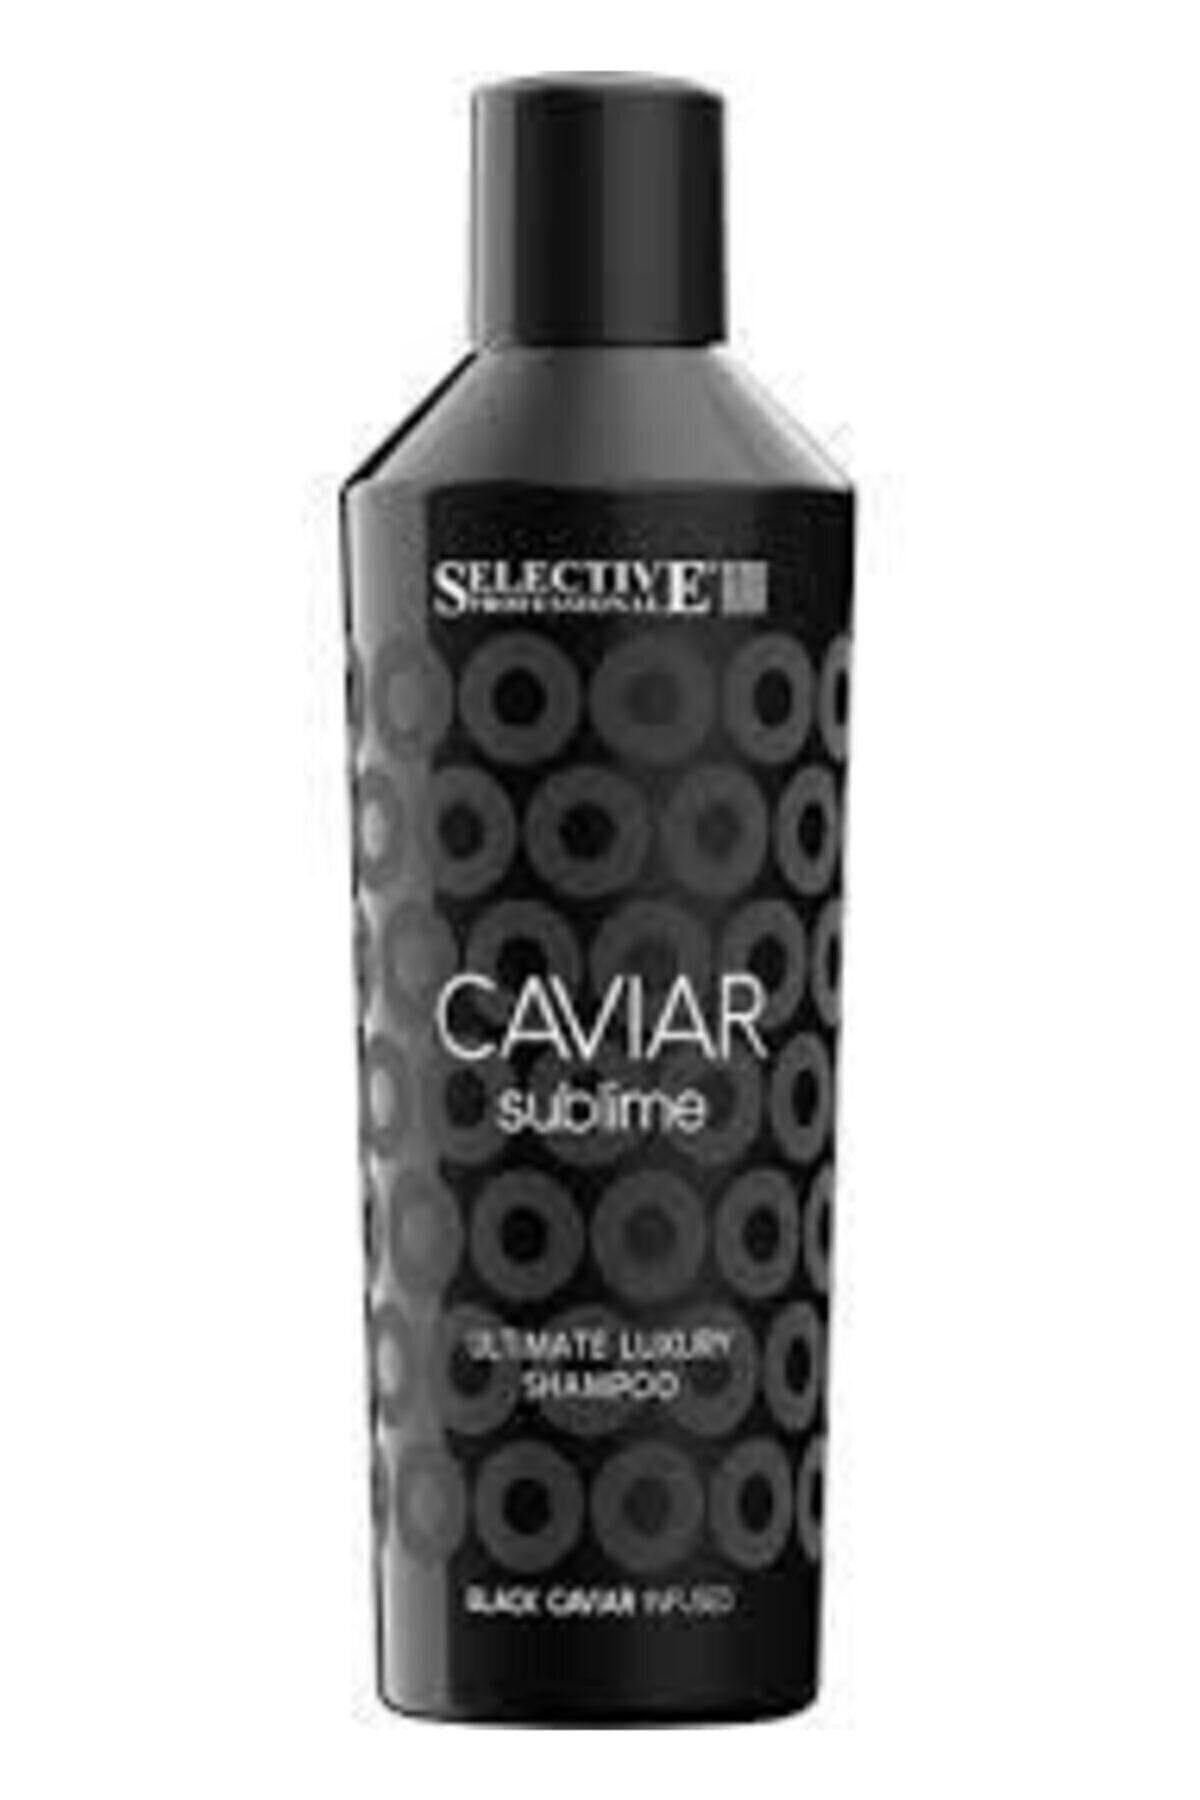 Selective Caviar Sublime Ultimate Luxury Şampuan Newonlıne.01